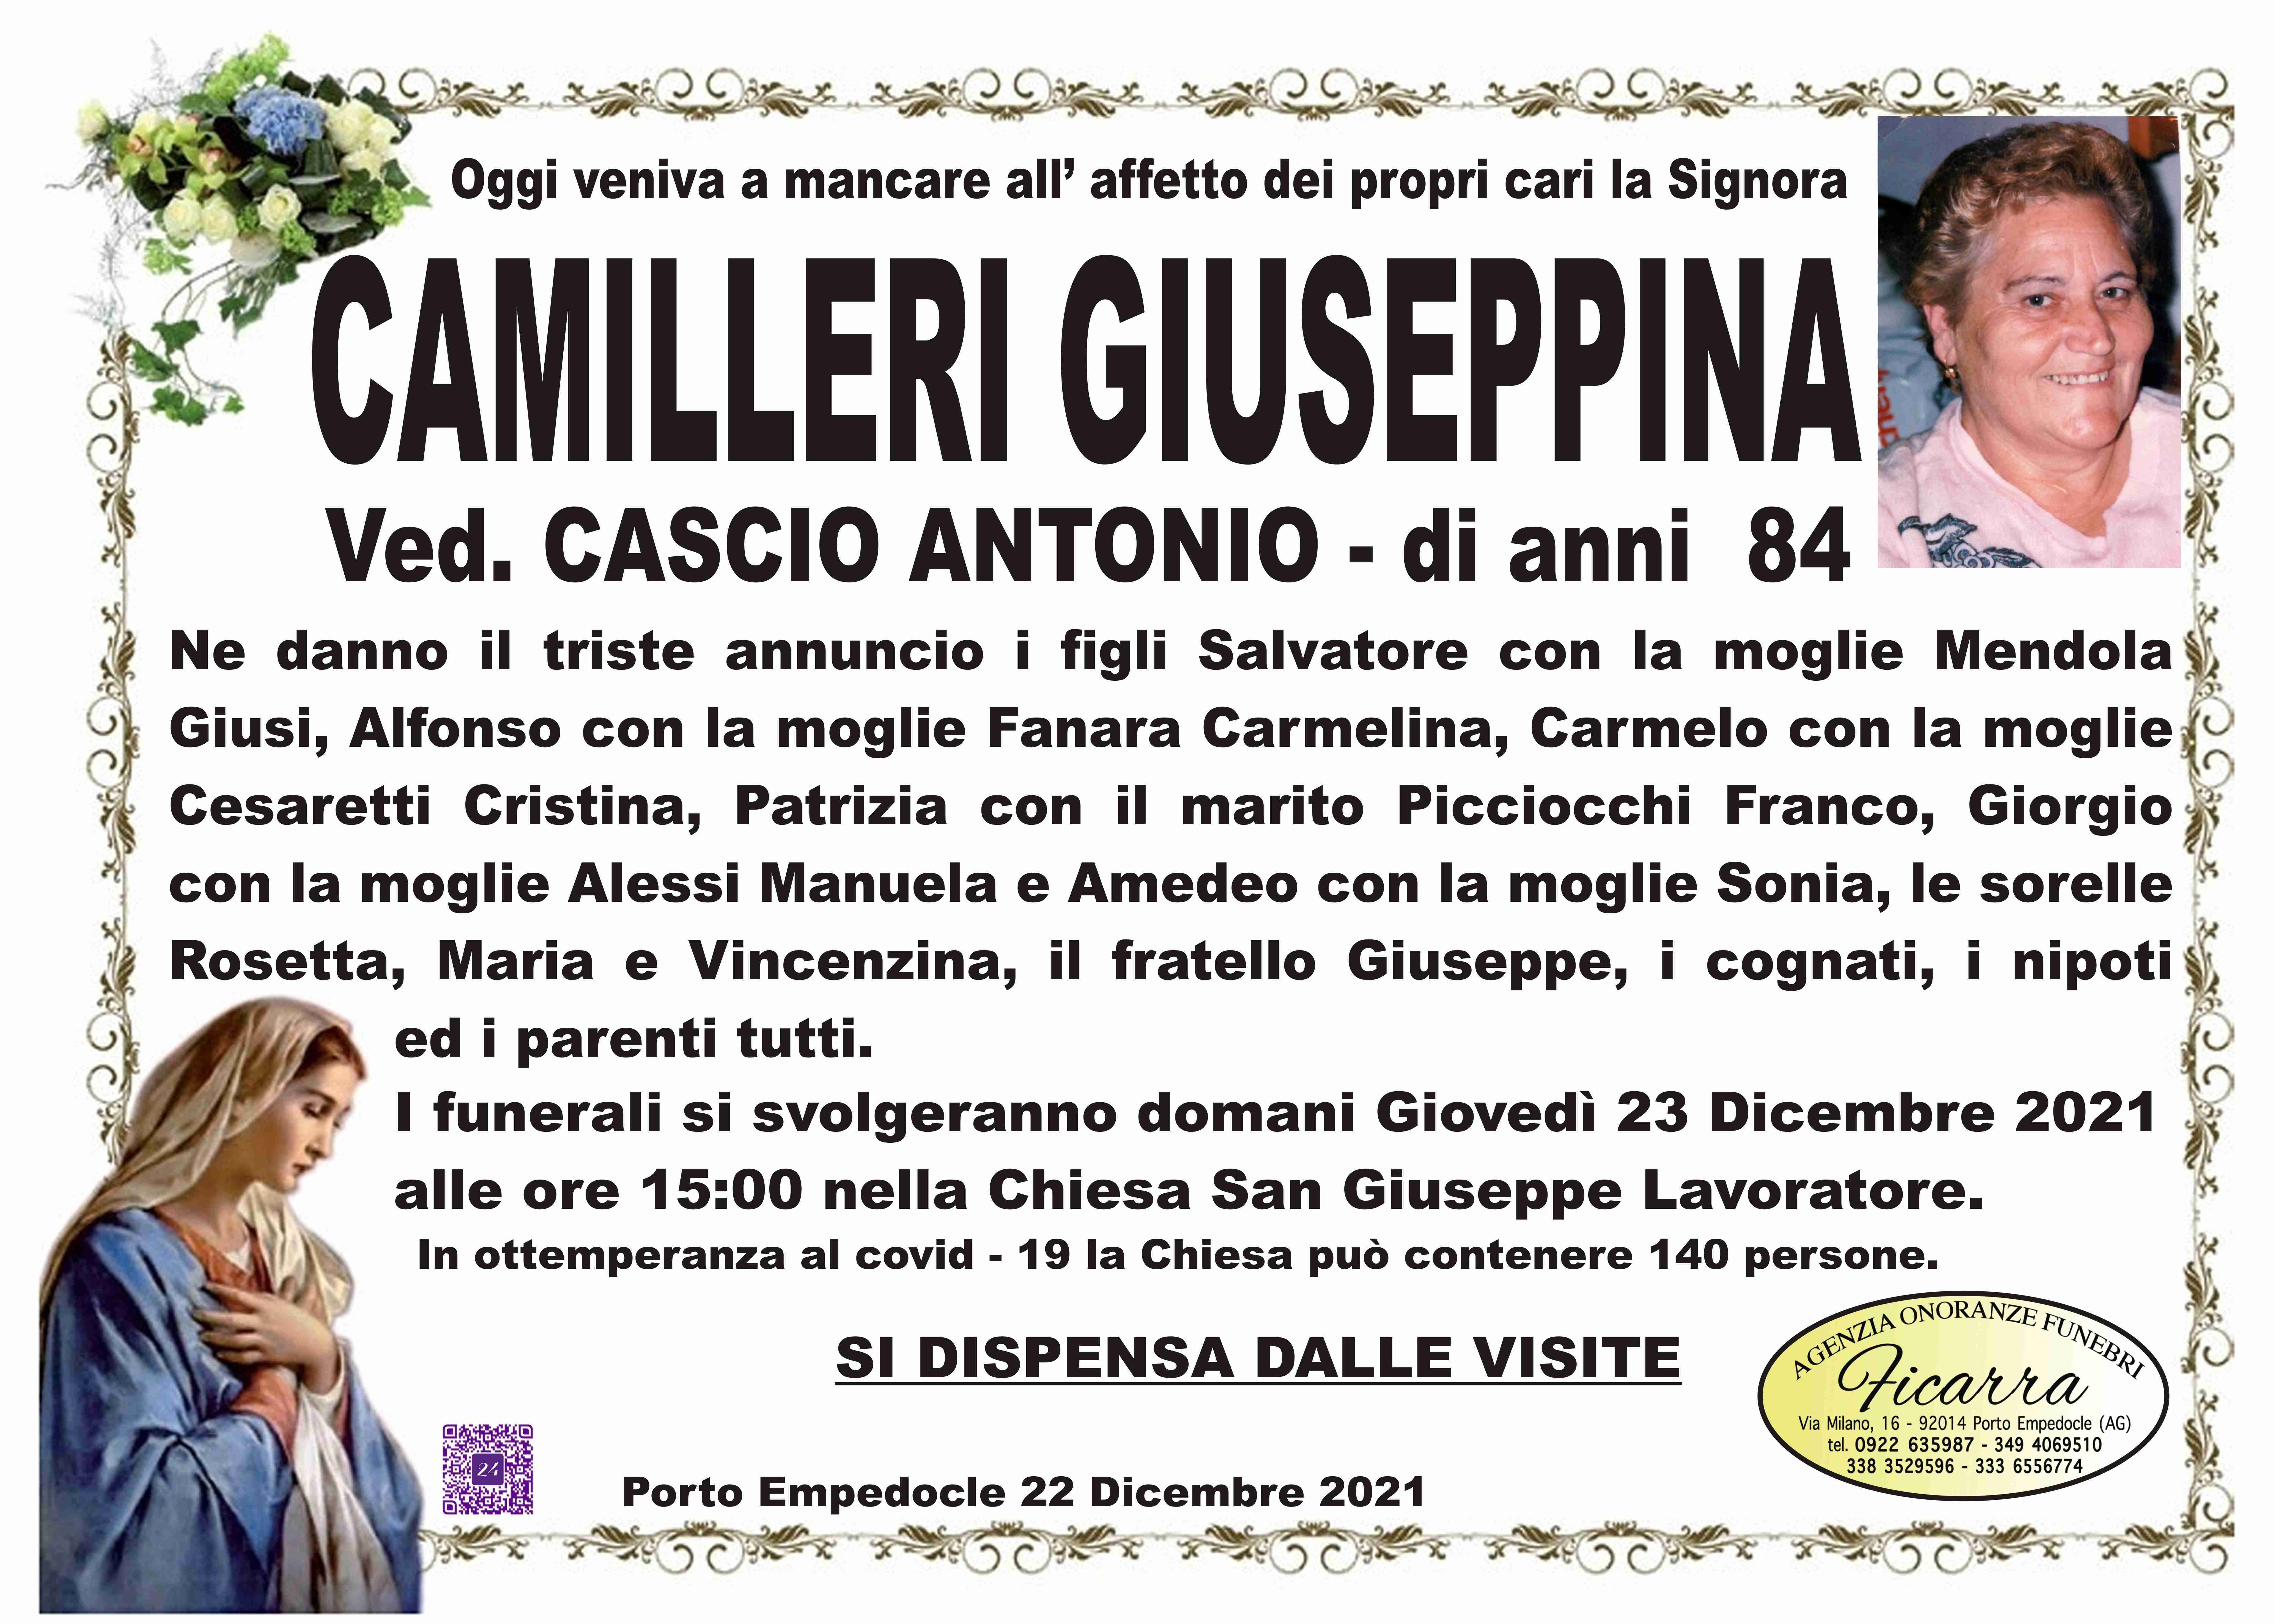 Giuseppina Camilleri